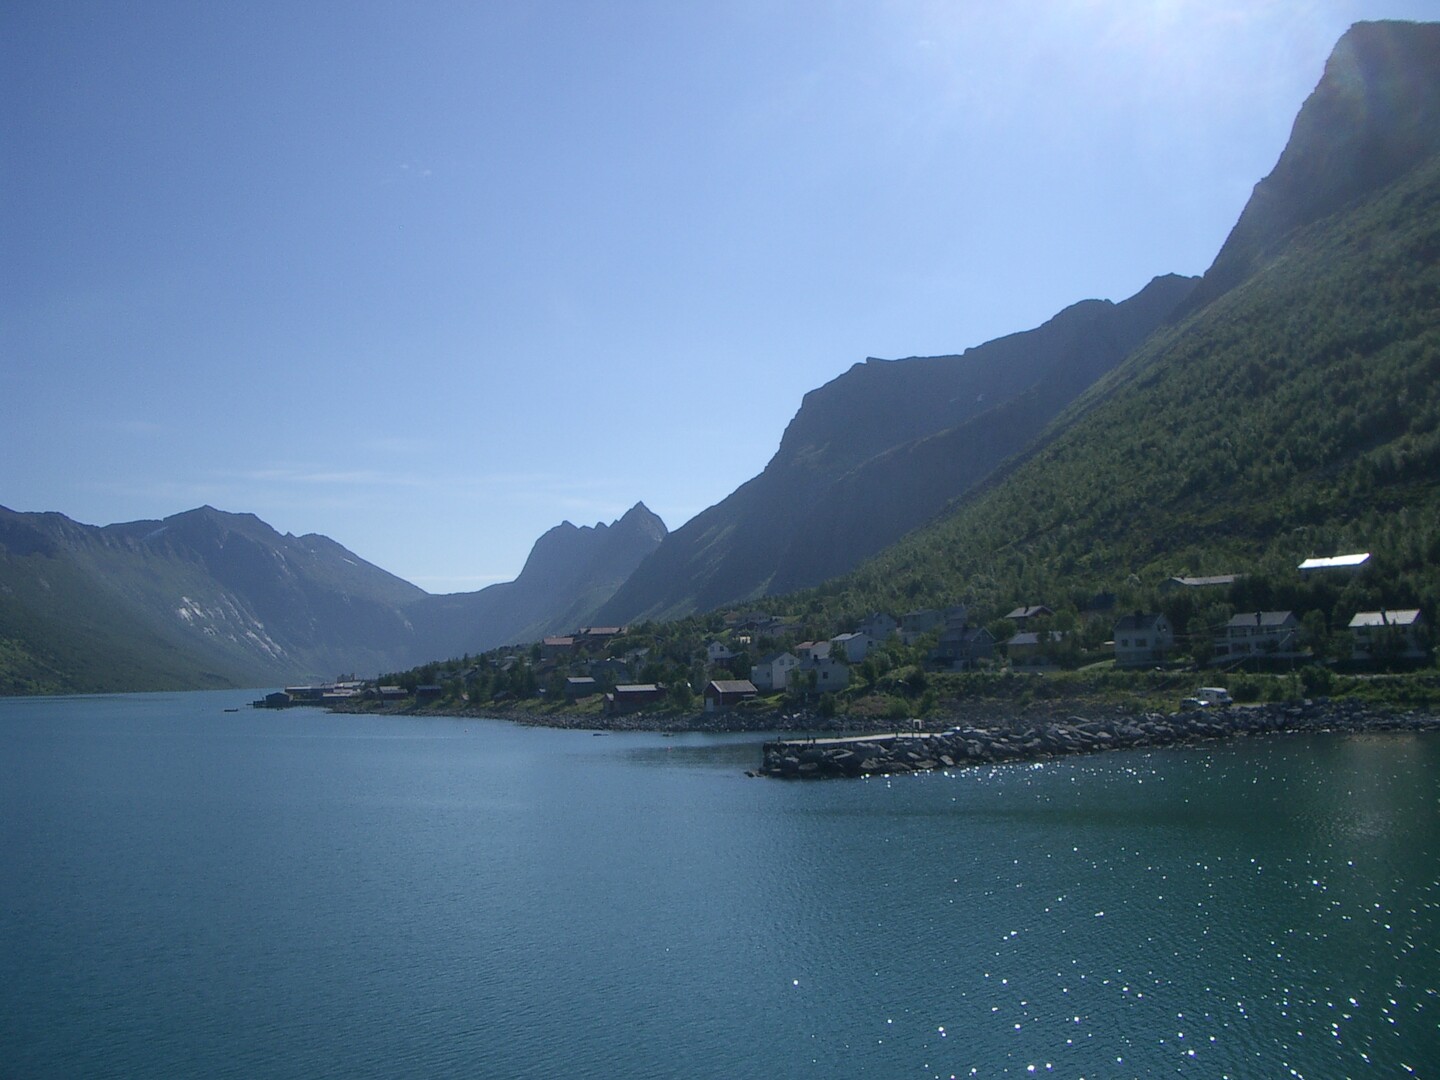 Blick auf Gryllefjord von der Fähre aus